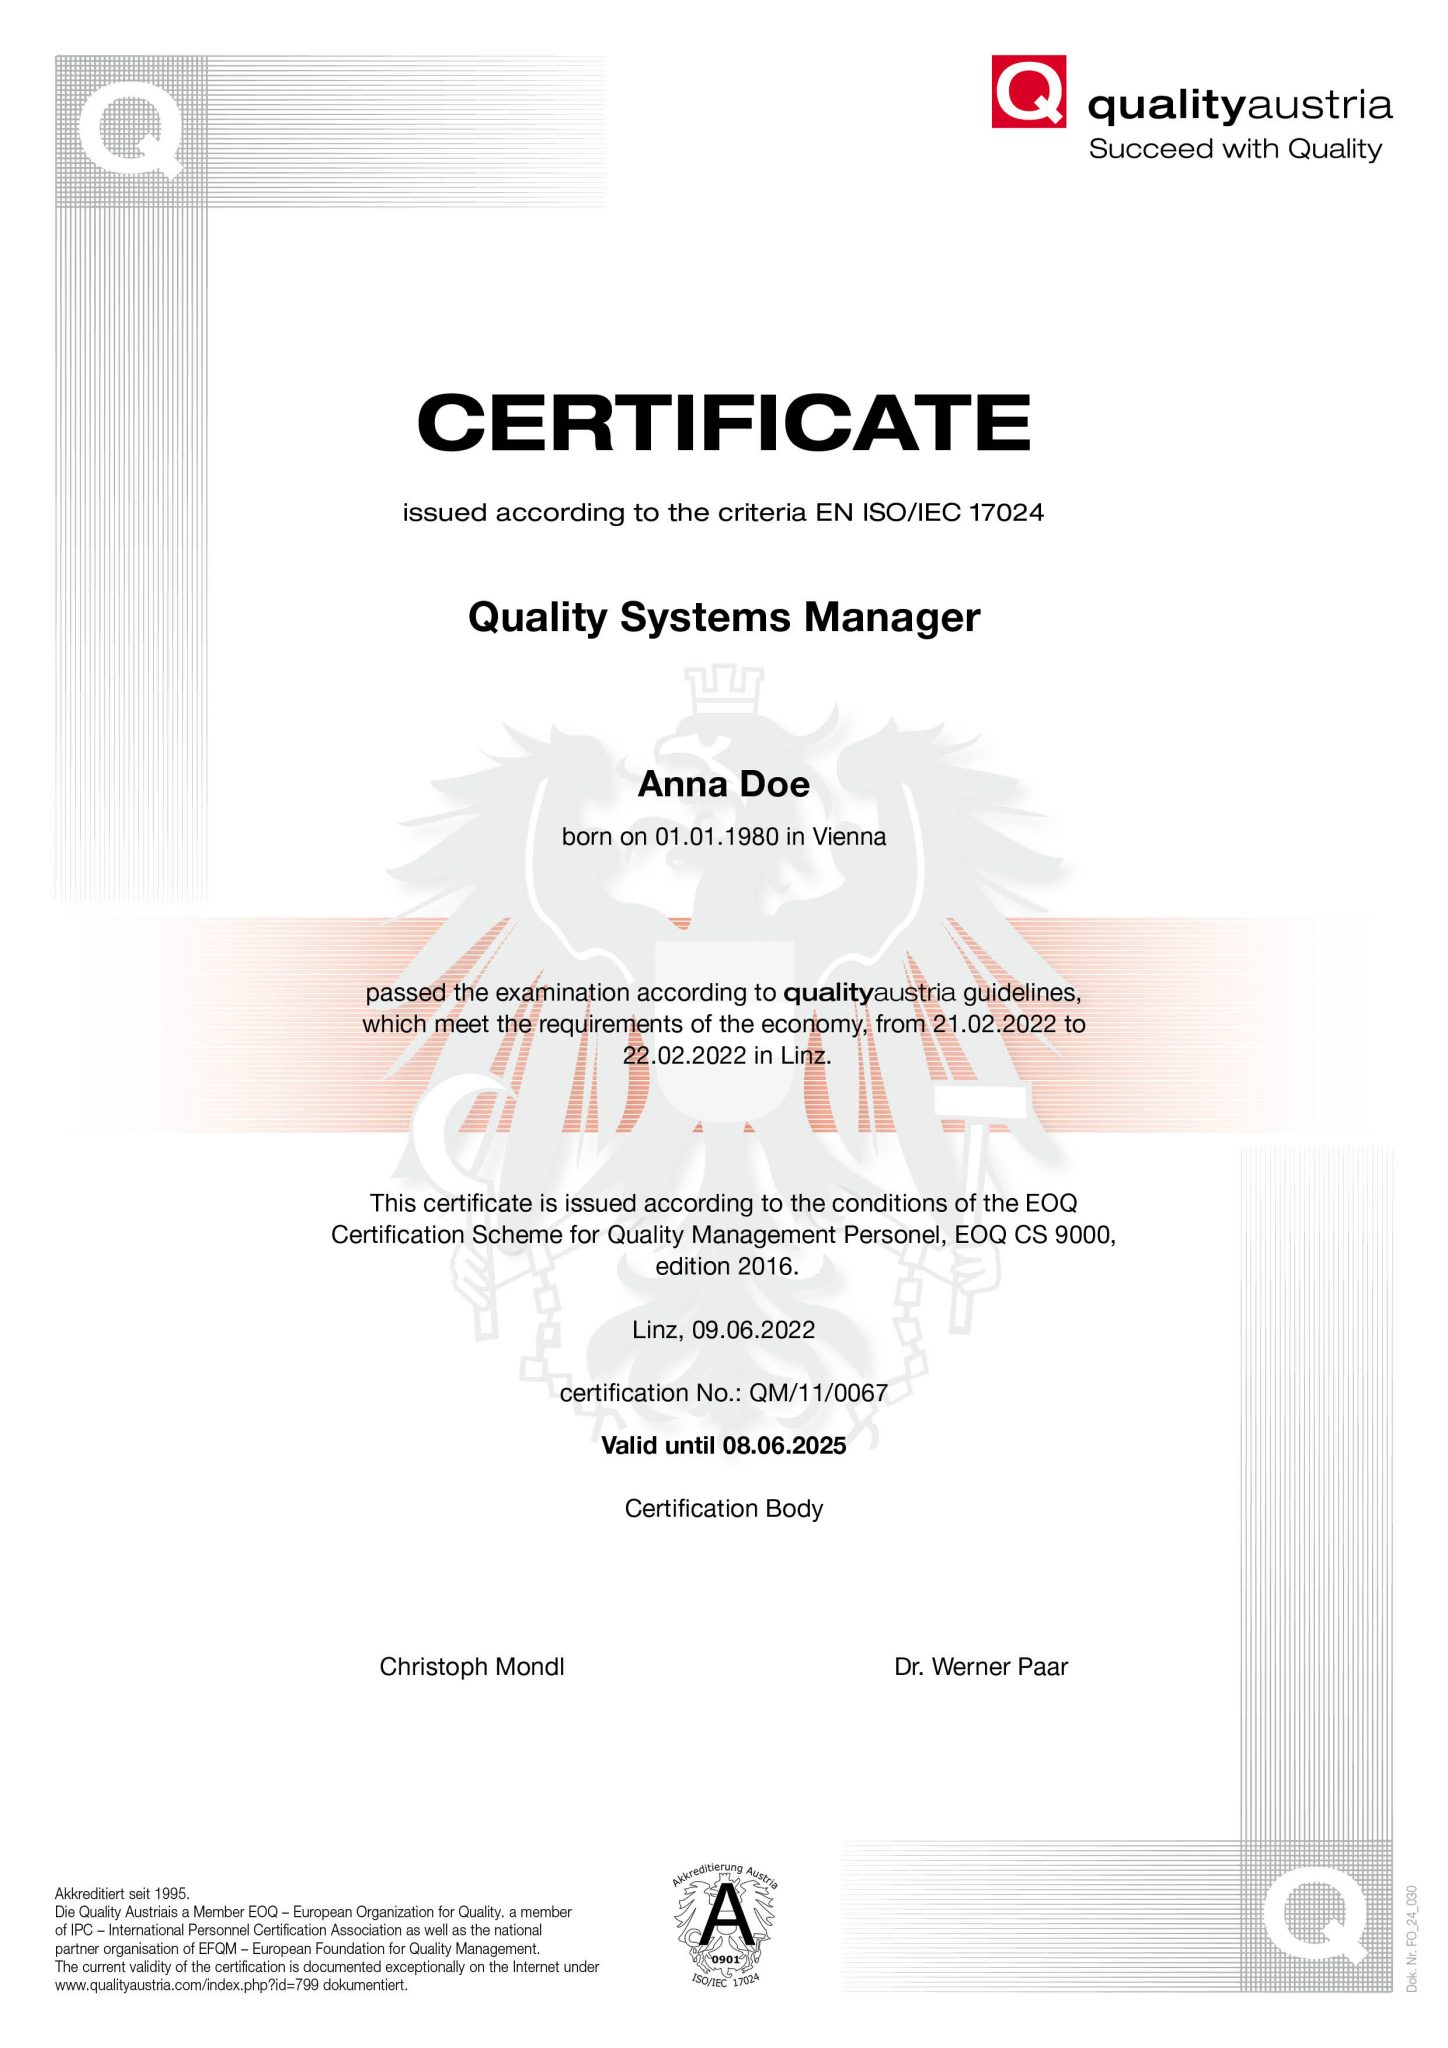 Man sieht ein qualityaustria Zertifikat, das eine Person zum*zur Quality Systems Manager zertifiziert. Das Zertifikat ist in englischer Sprache verfasst.